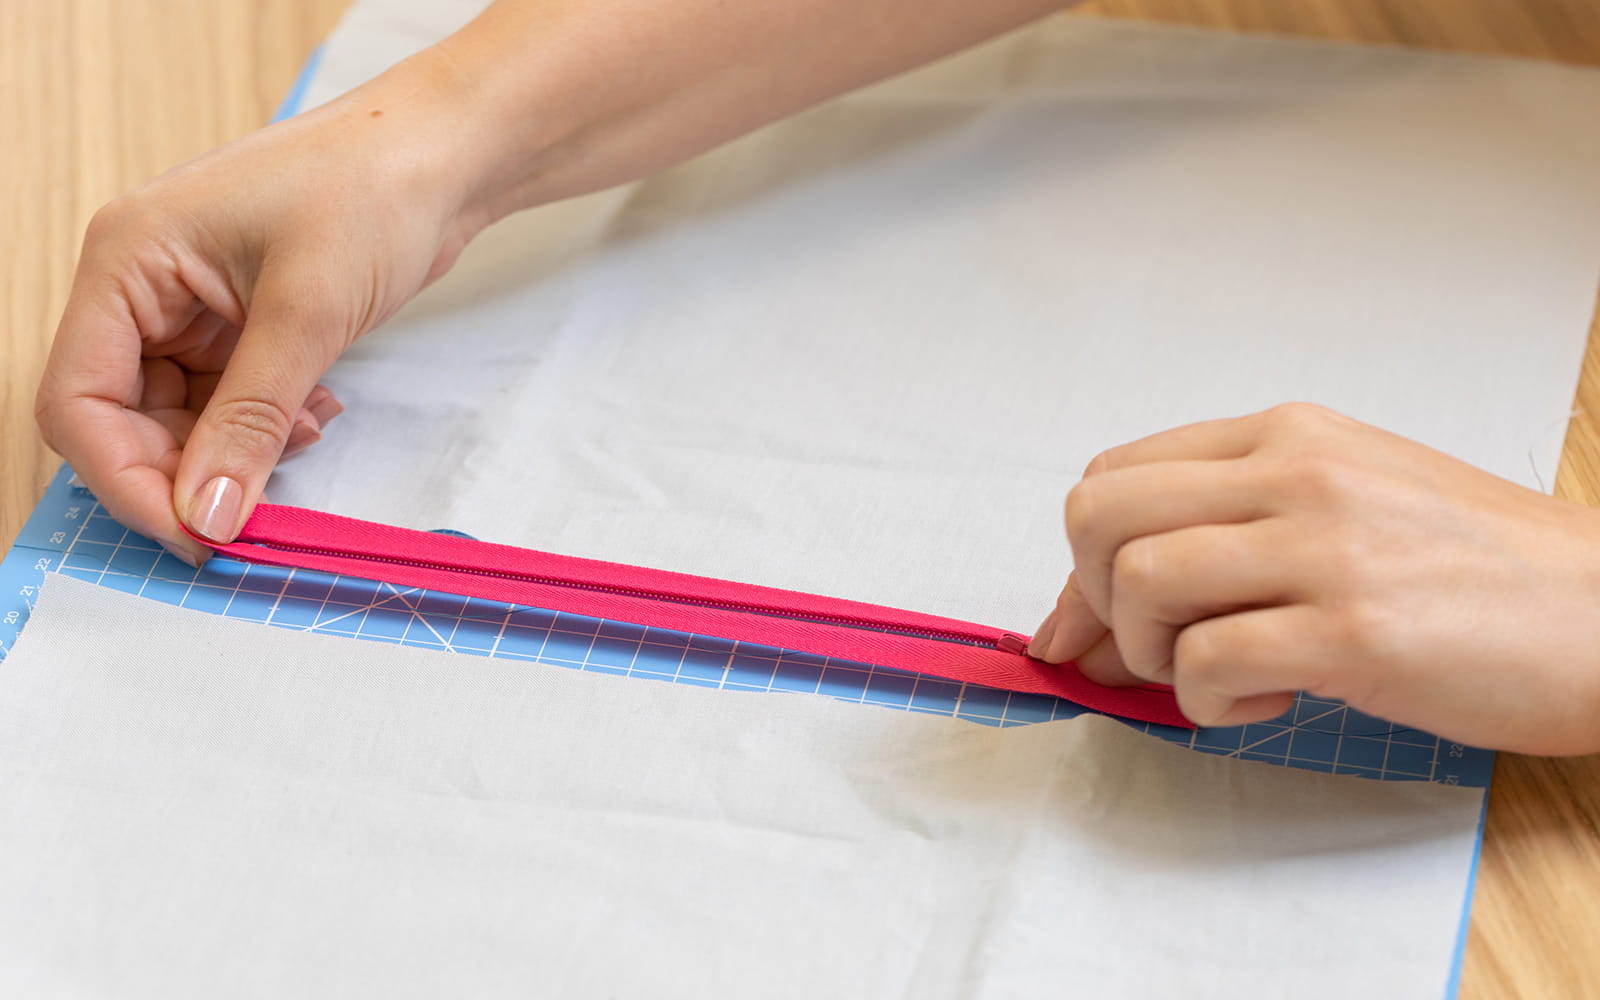 Hands pulling pink zipper open on blue cutting mat